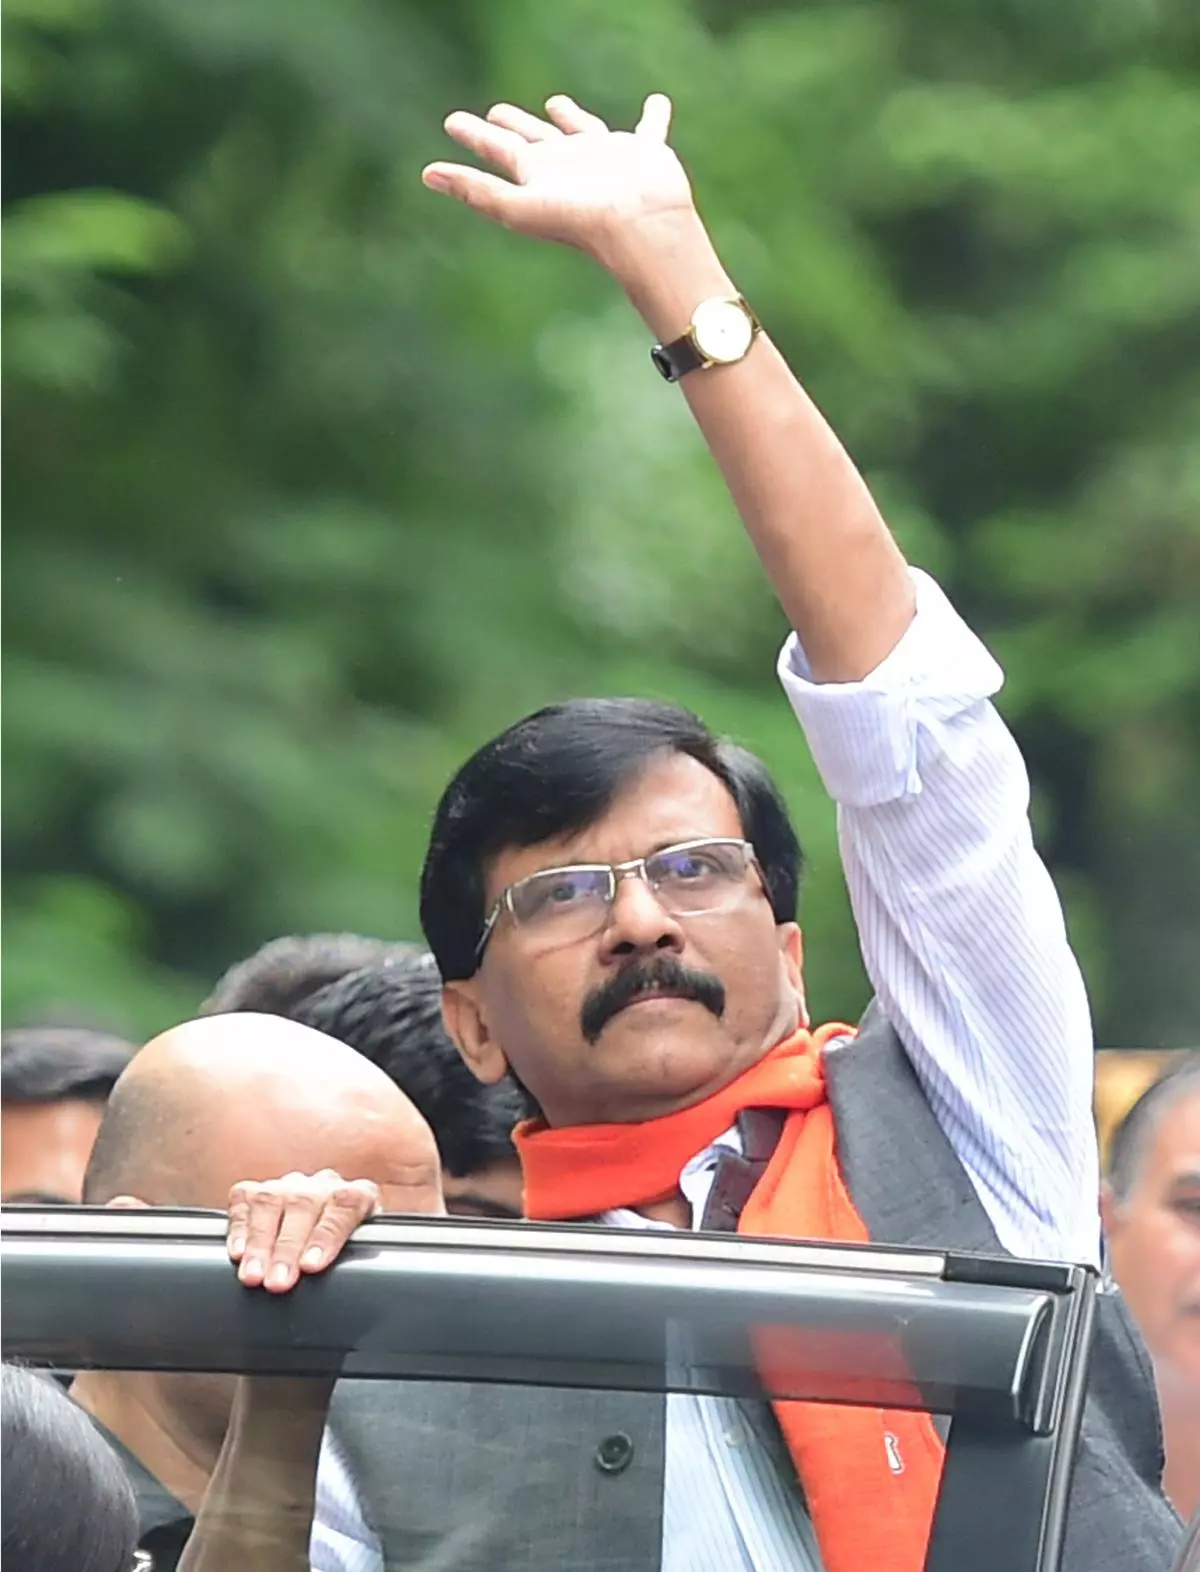  Mumbai: Shiv Sena MP Sanjay Raut